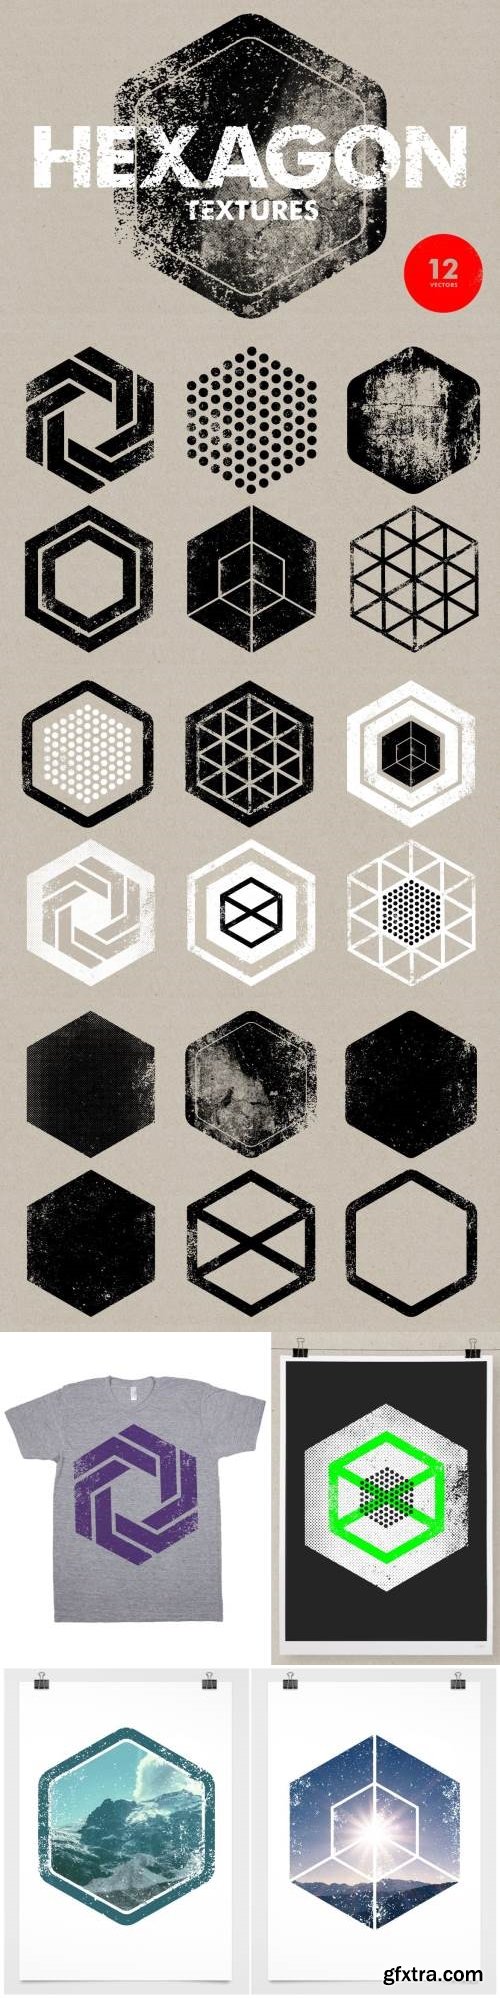 Hexagon Textures